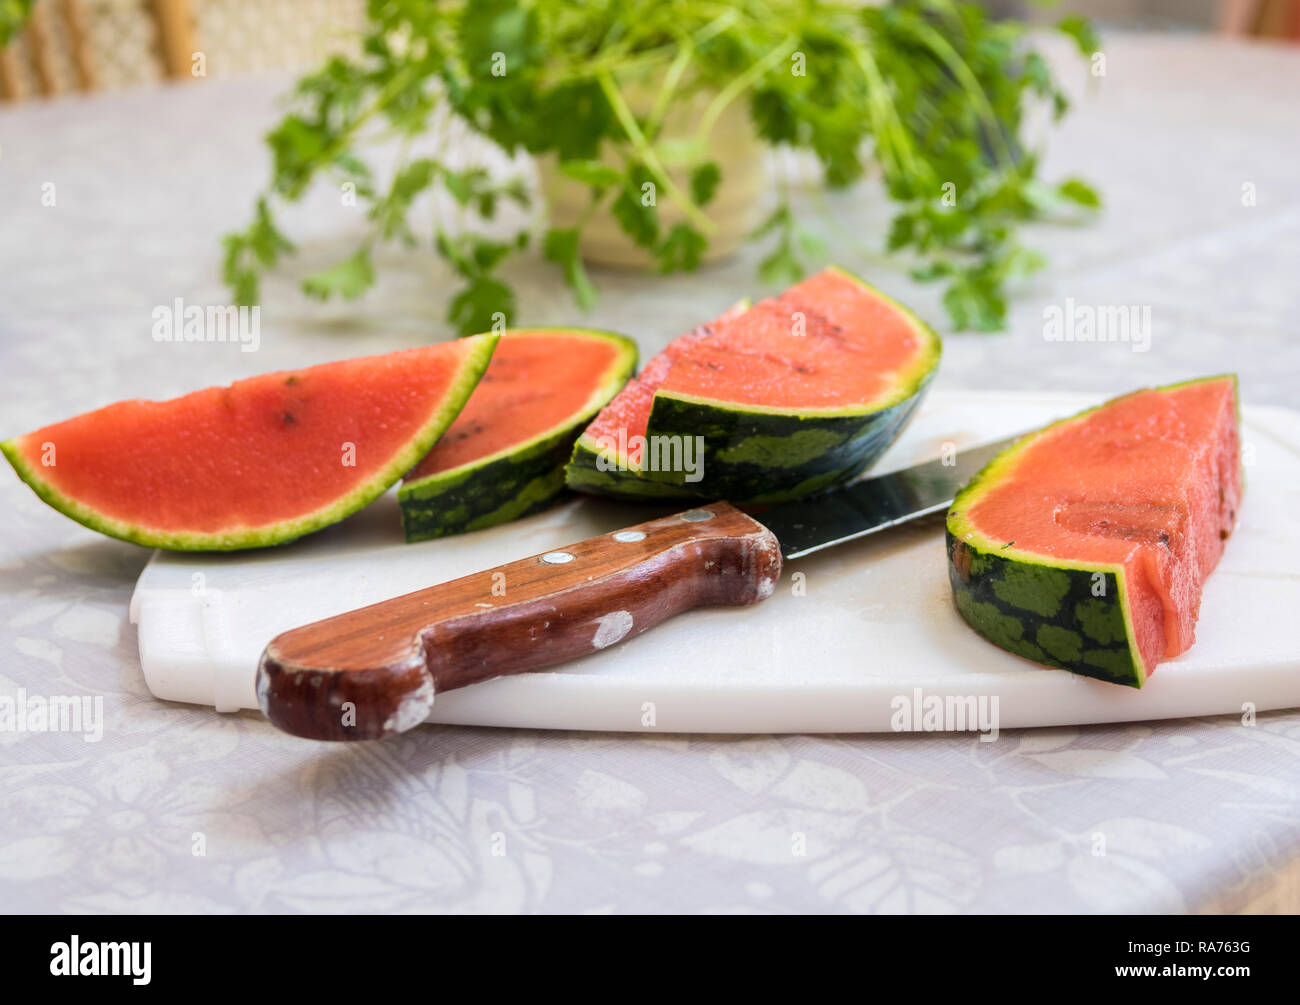 Scheiben rote reife Wassermelone ein Schneidebrett scharfe Schinkenmesser Griff aus Holz, 5 am Tag, gesundes Wohnen, Lifestyle Konzept frisches Obst frühstück Melone Stockfoto